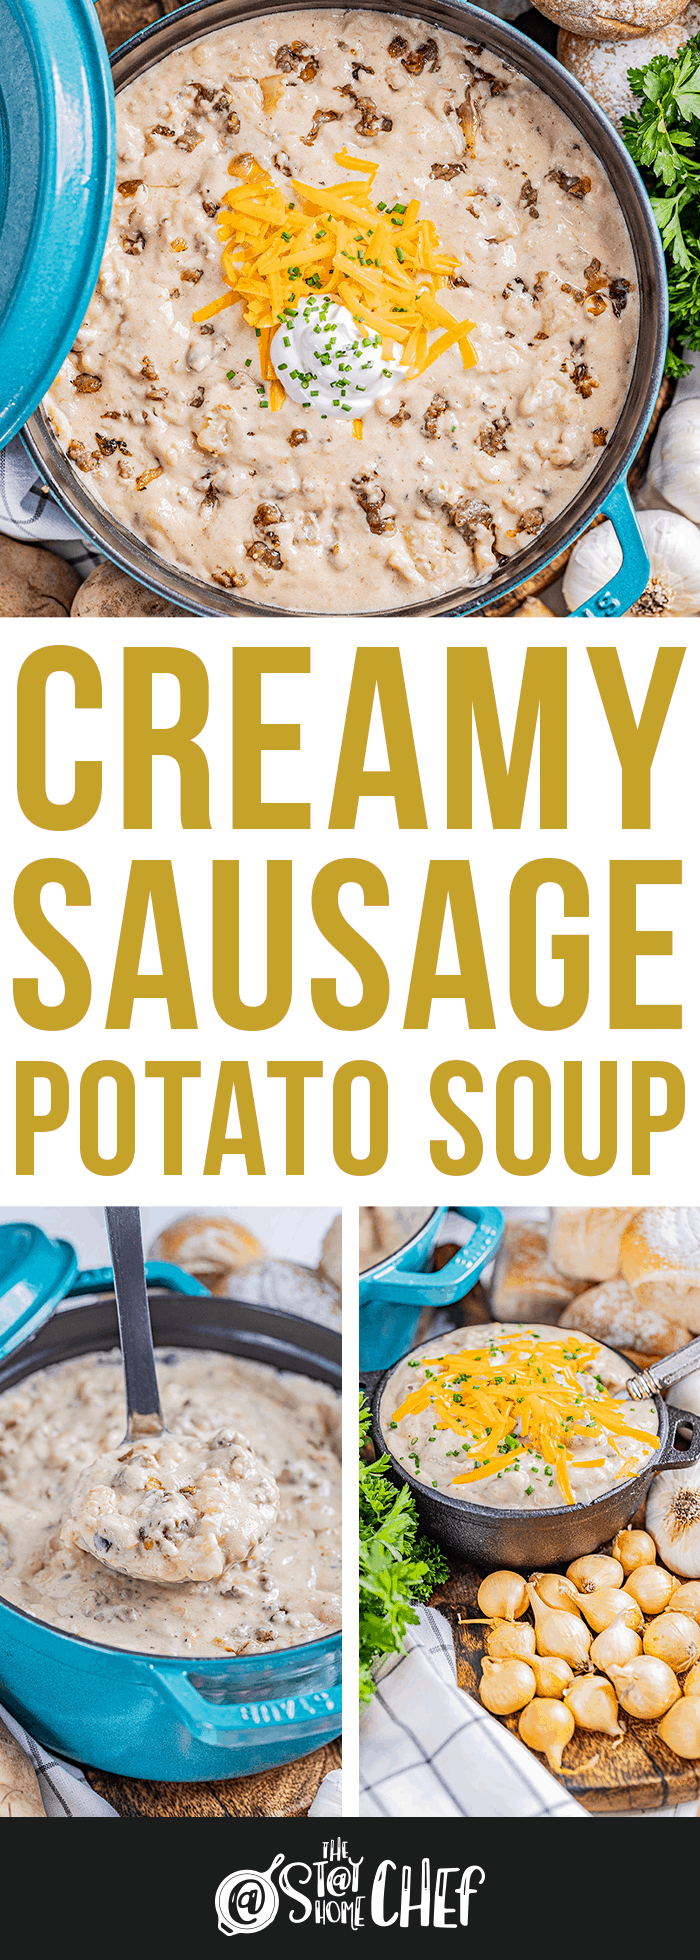 Creamy Sausage Potato Soup